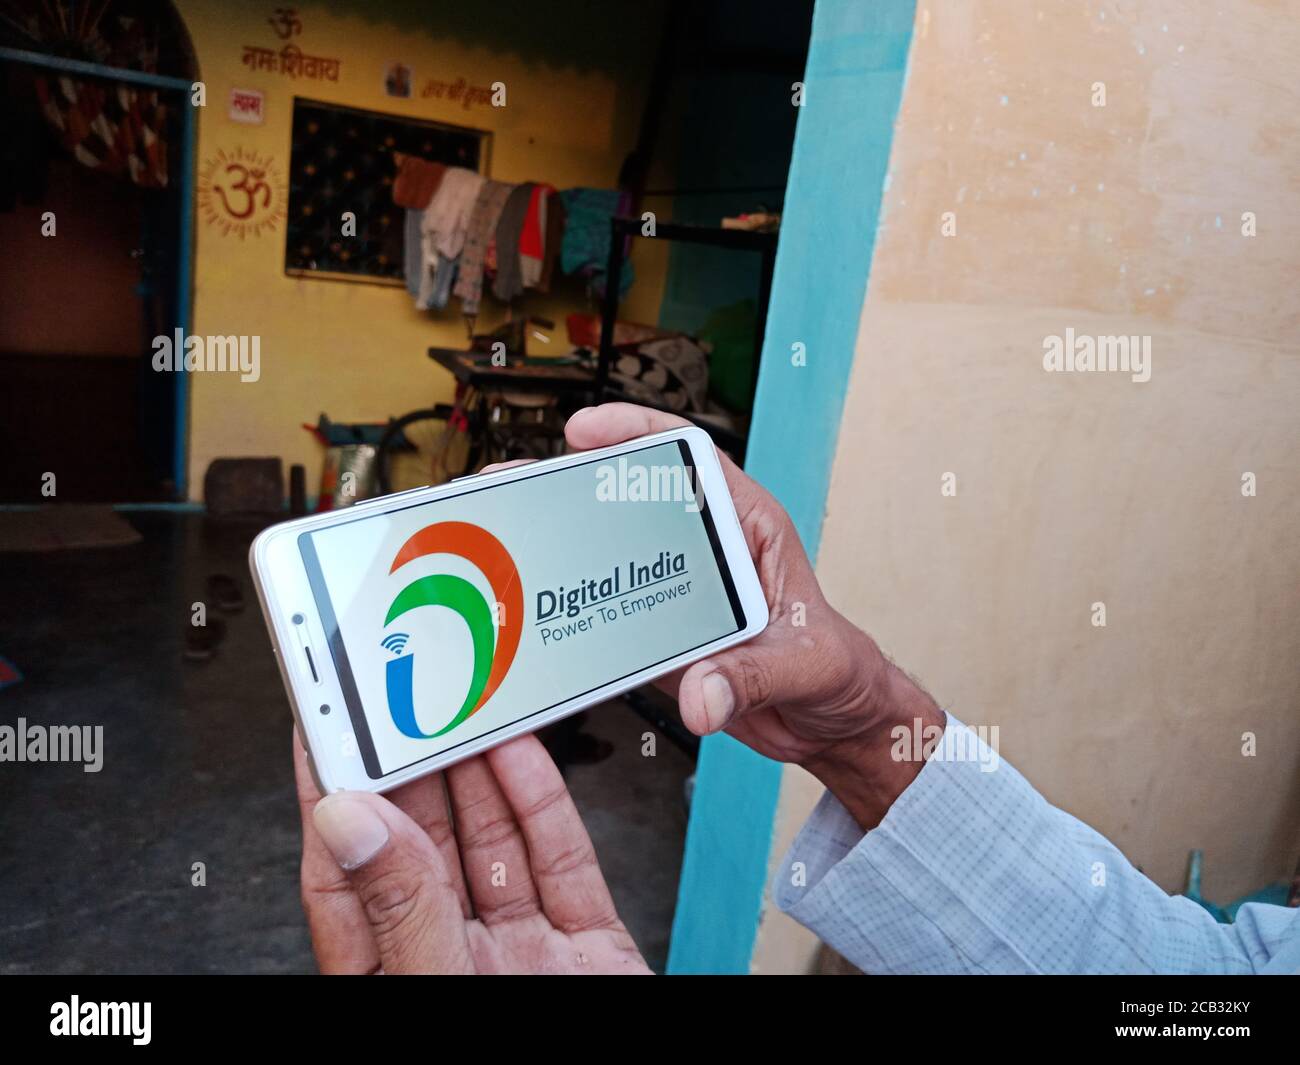 DISTRETTO KATNI, INDIA - 23 MAGGIO 2020: Uomo che tiene smartphone con la potenza digitale visualizzata india per potenziare lo schema sullo schermo. Governo indiano Foto Stock